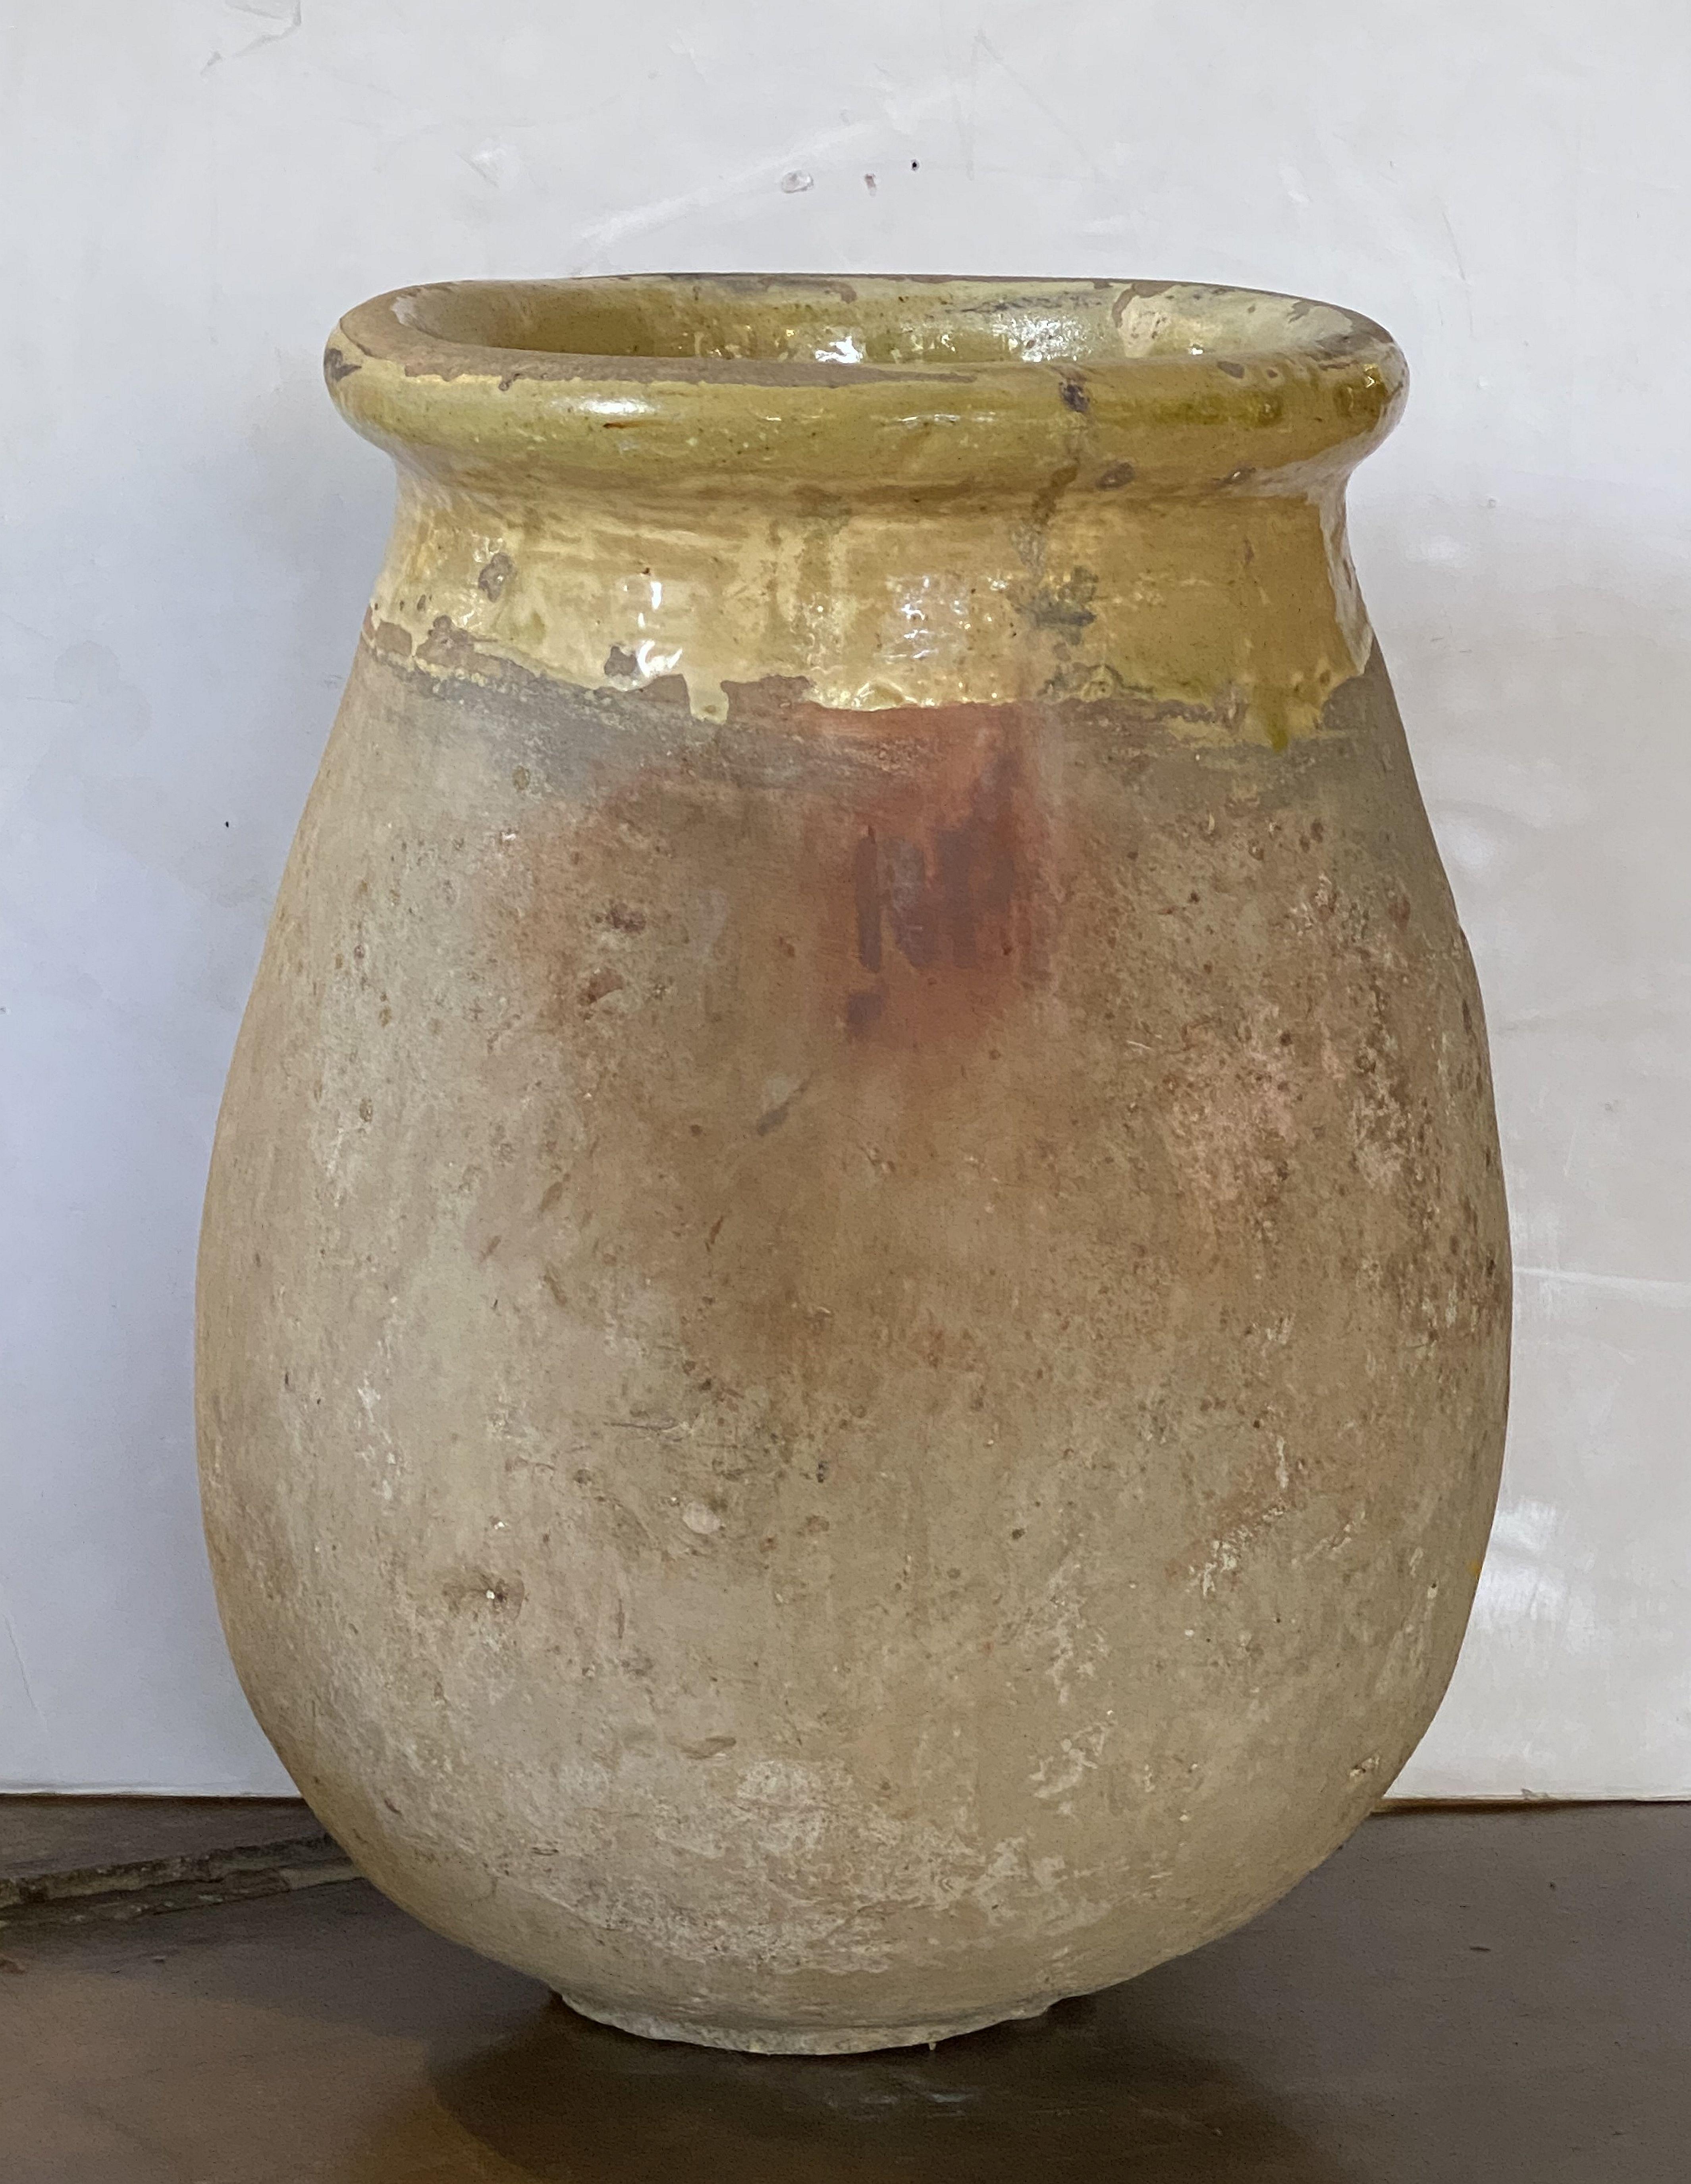 Biot Garden Urn or Oil Jar from France 12